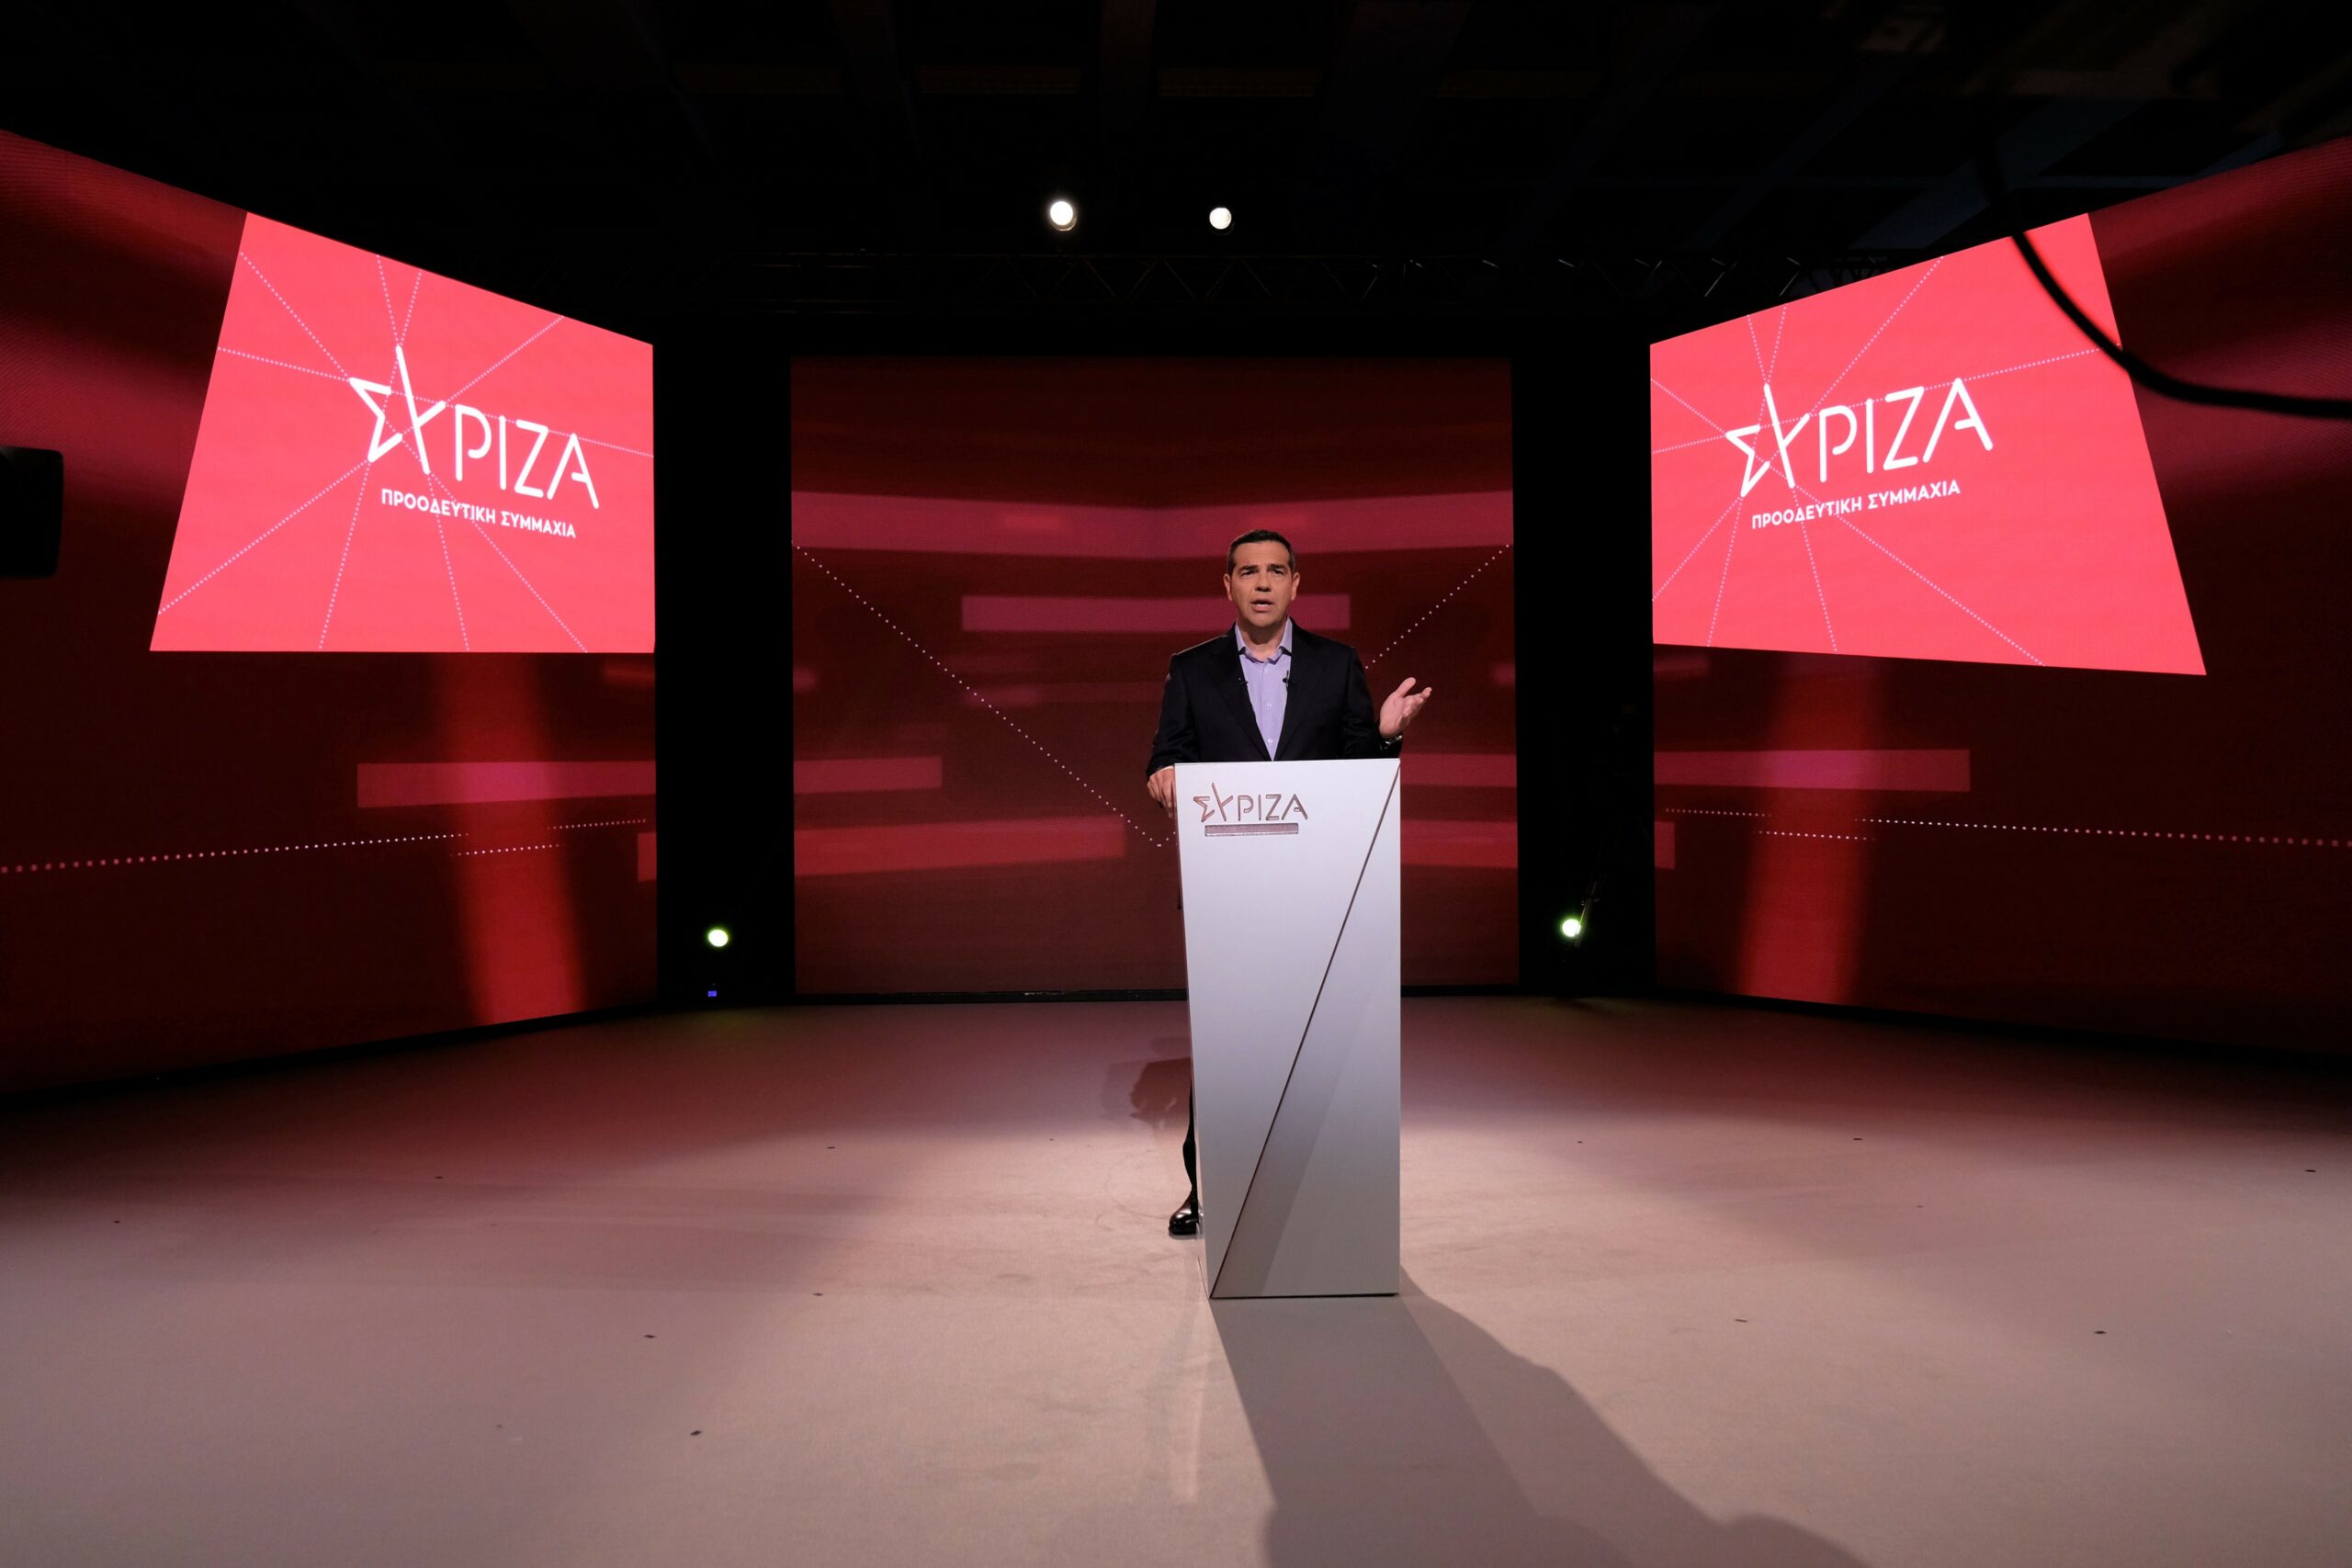 Αλ. Τσίπρας: Το "Σχέδιο ΕΛΛΑΔΑ +" είναι αυτό που "πραγματικά έχει ανάγκη η ελληνική κοινωνία"